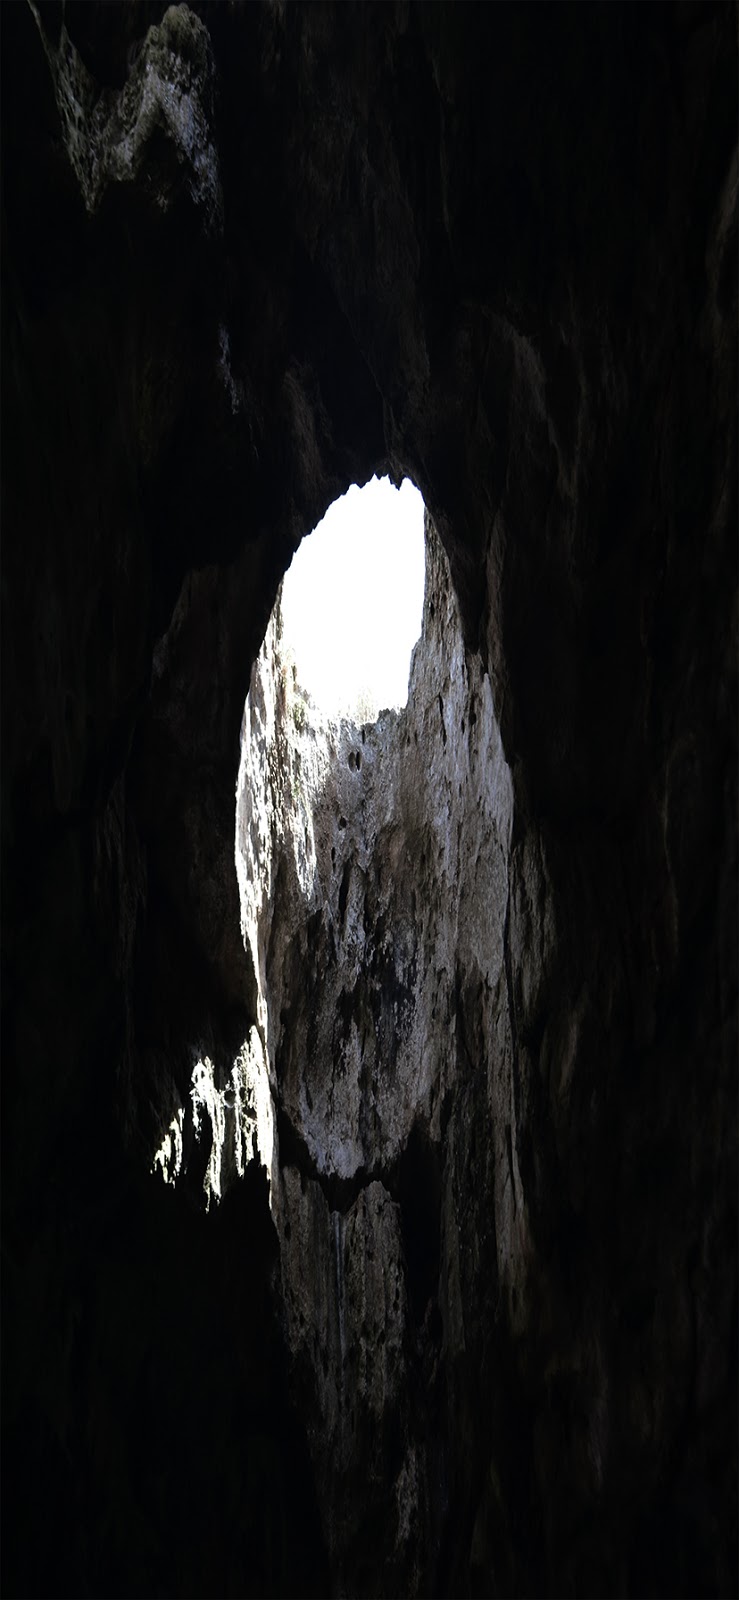 Wallpaper Cave